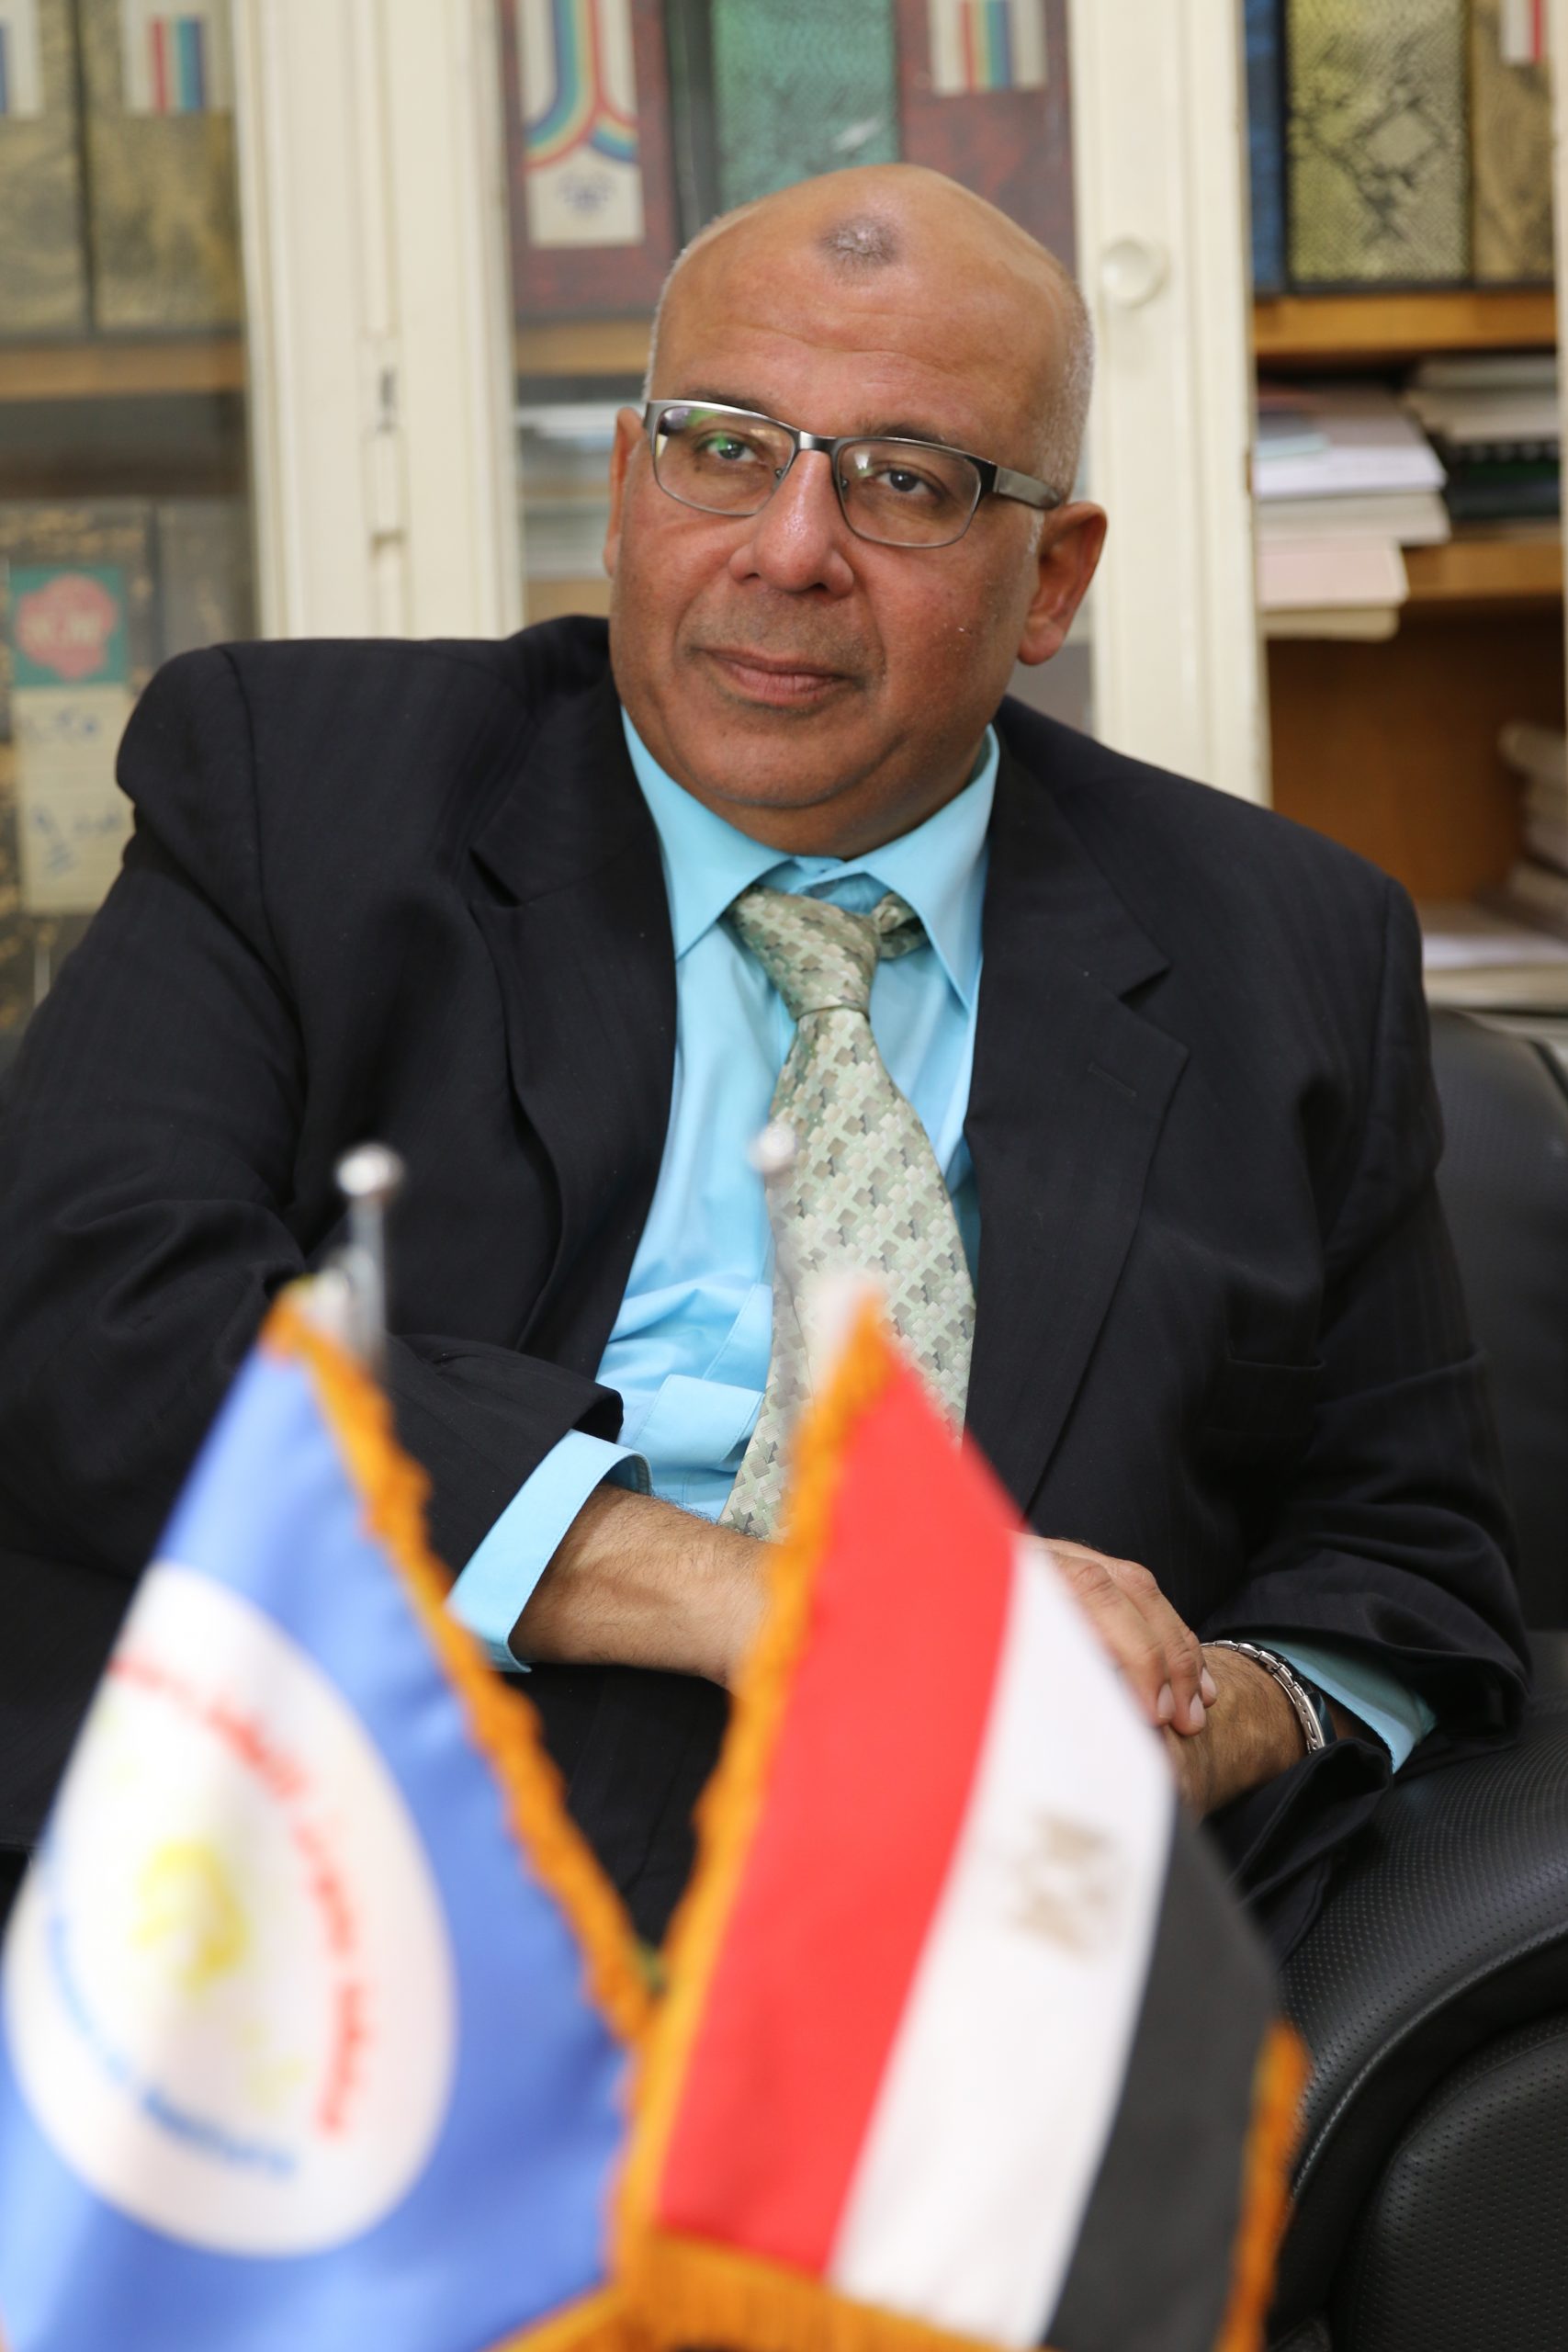   د. هشام الديب رئيس معهد بحوث الإلكترونيات : حصلنا على براءة إختراع لجهاز «مستشعر الفيروسات» العام الماضي